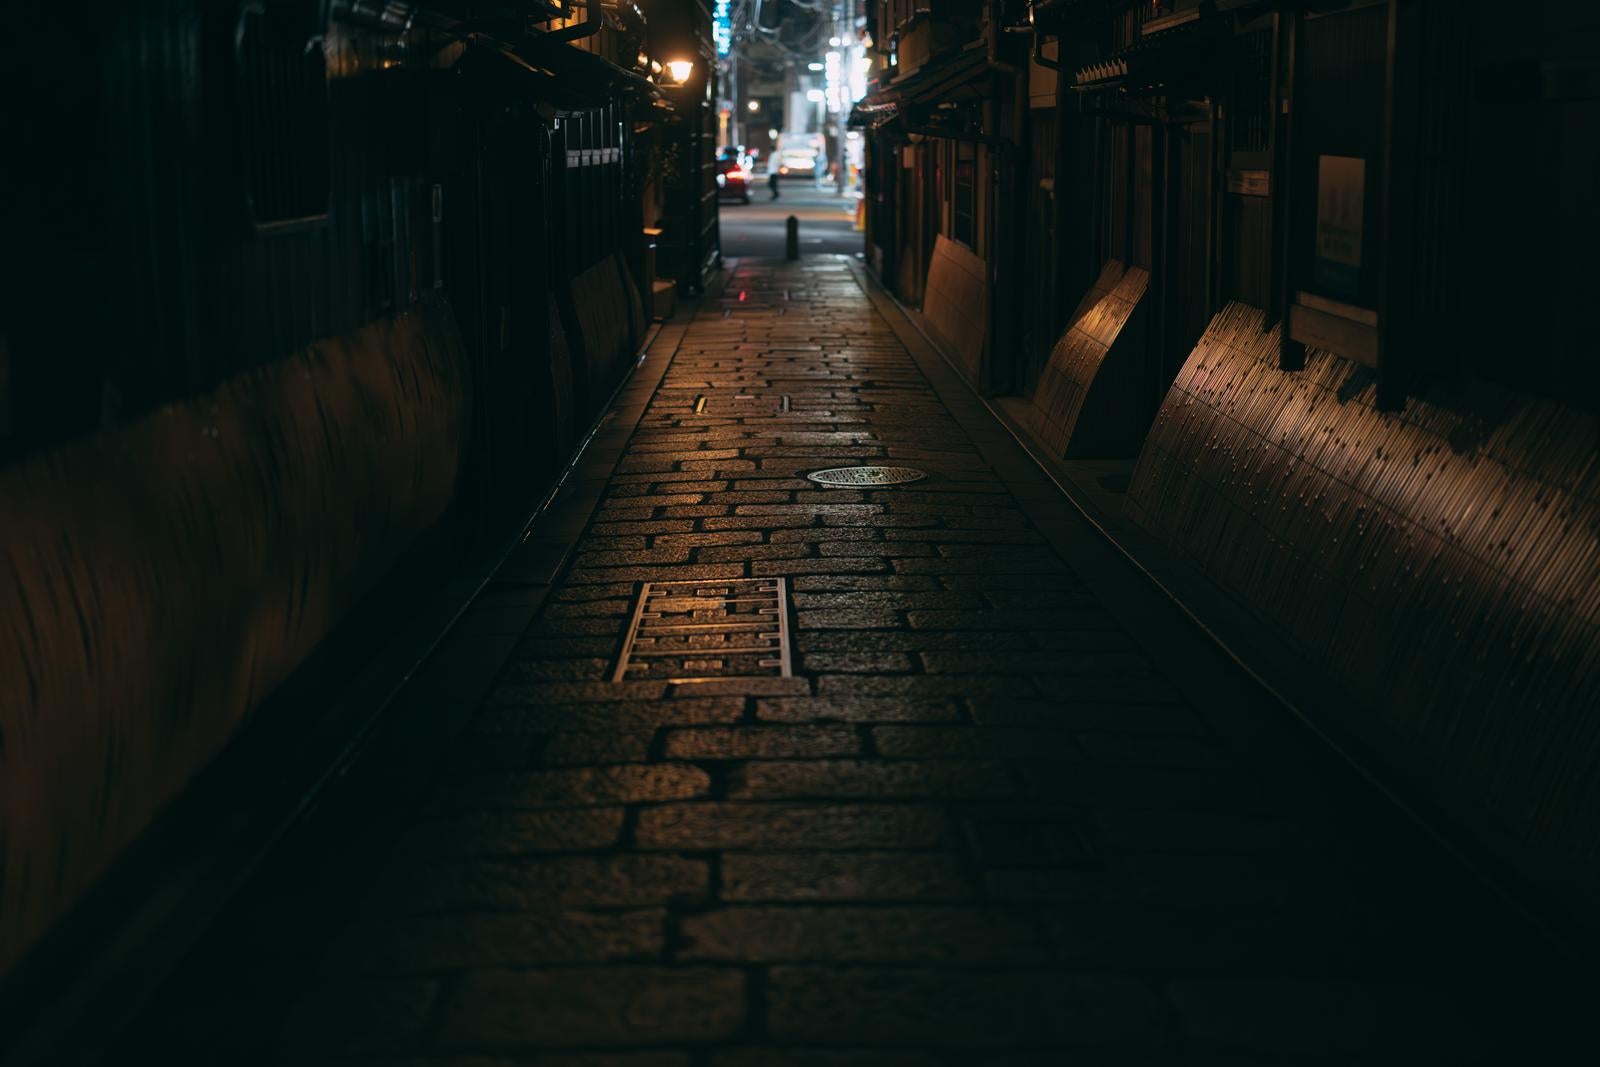 「京都祇園白川の夜の路地裏」の写真